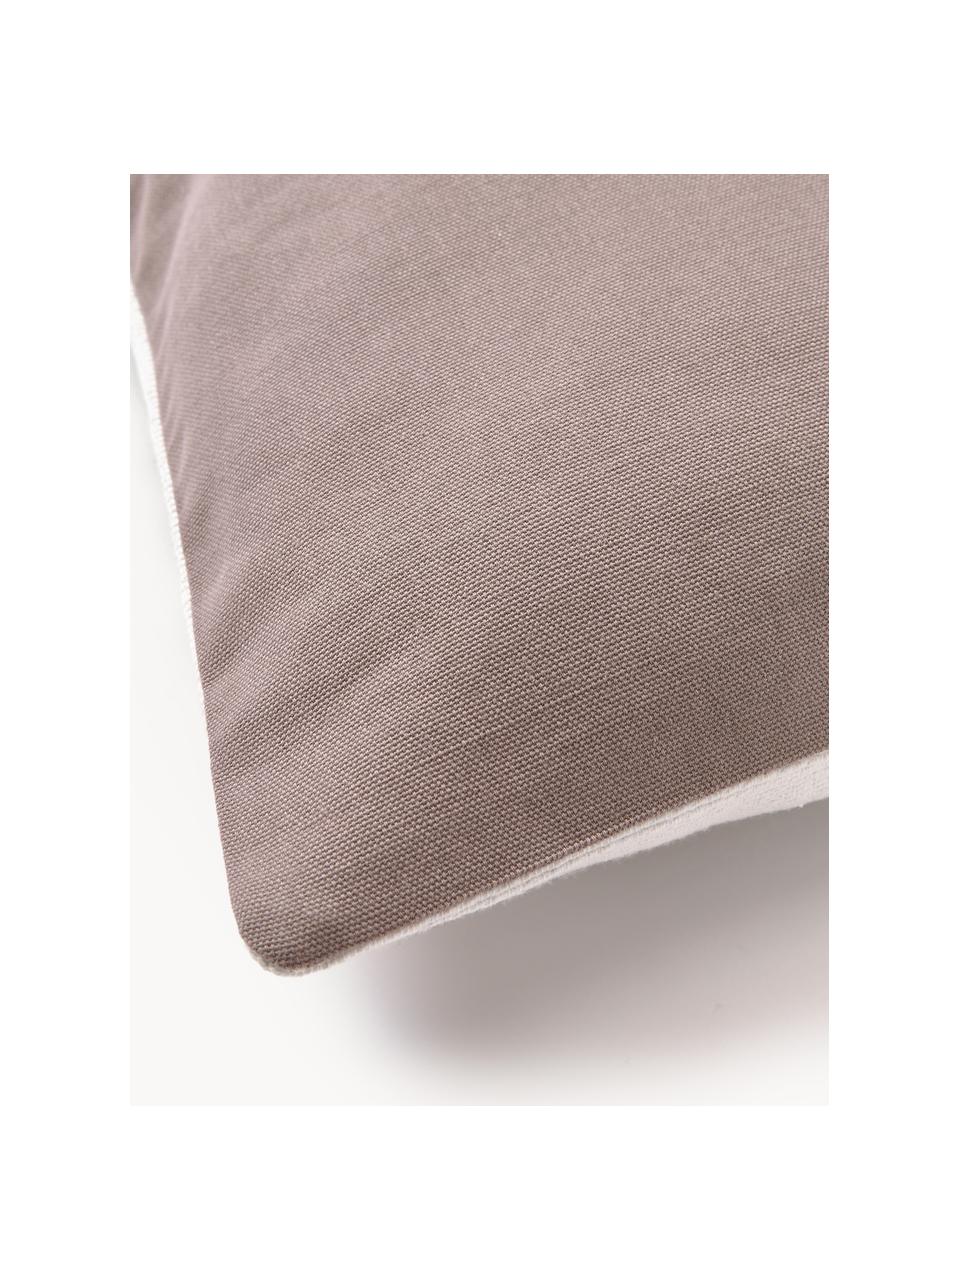 Bestickte Baumwoll-Kissenhülle Maree mit abstrakten Verzierungen, 100 % Baumwolle, Taupe, Off White, B 45 x L 45 cm